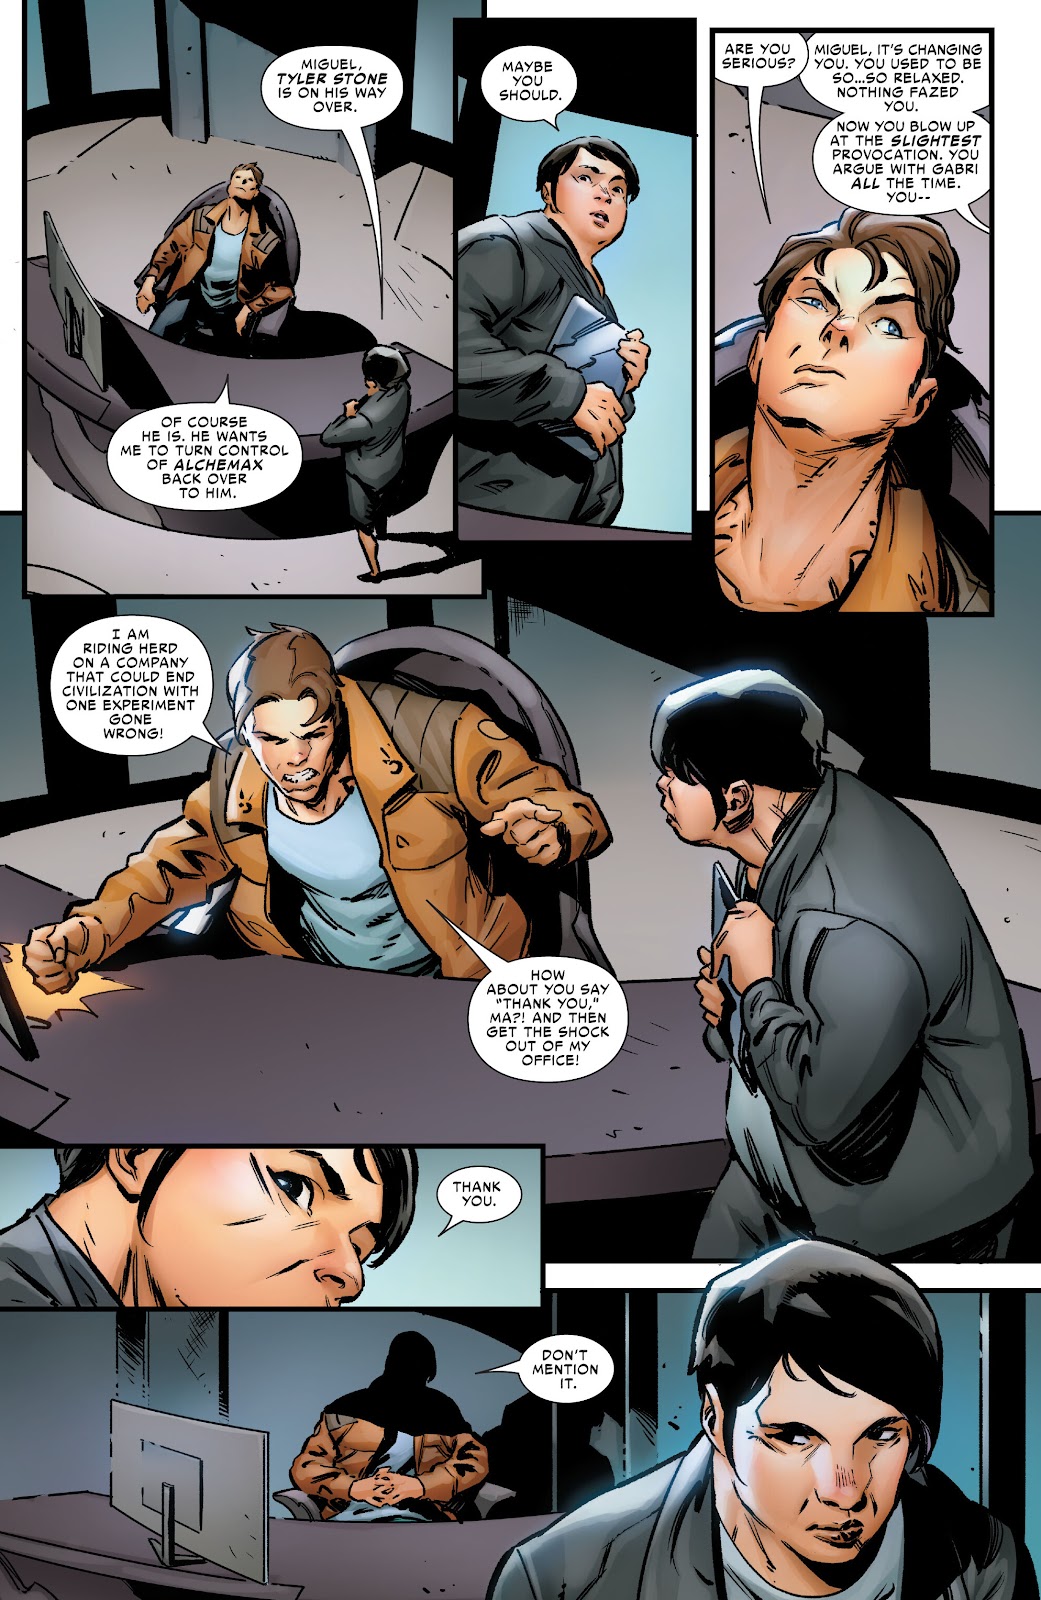 Symbiote Spider-Man 2099 issue 1 - Page 17